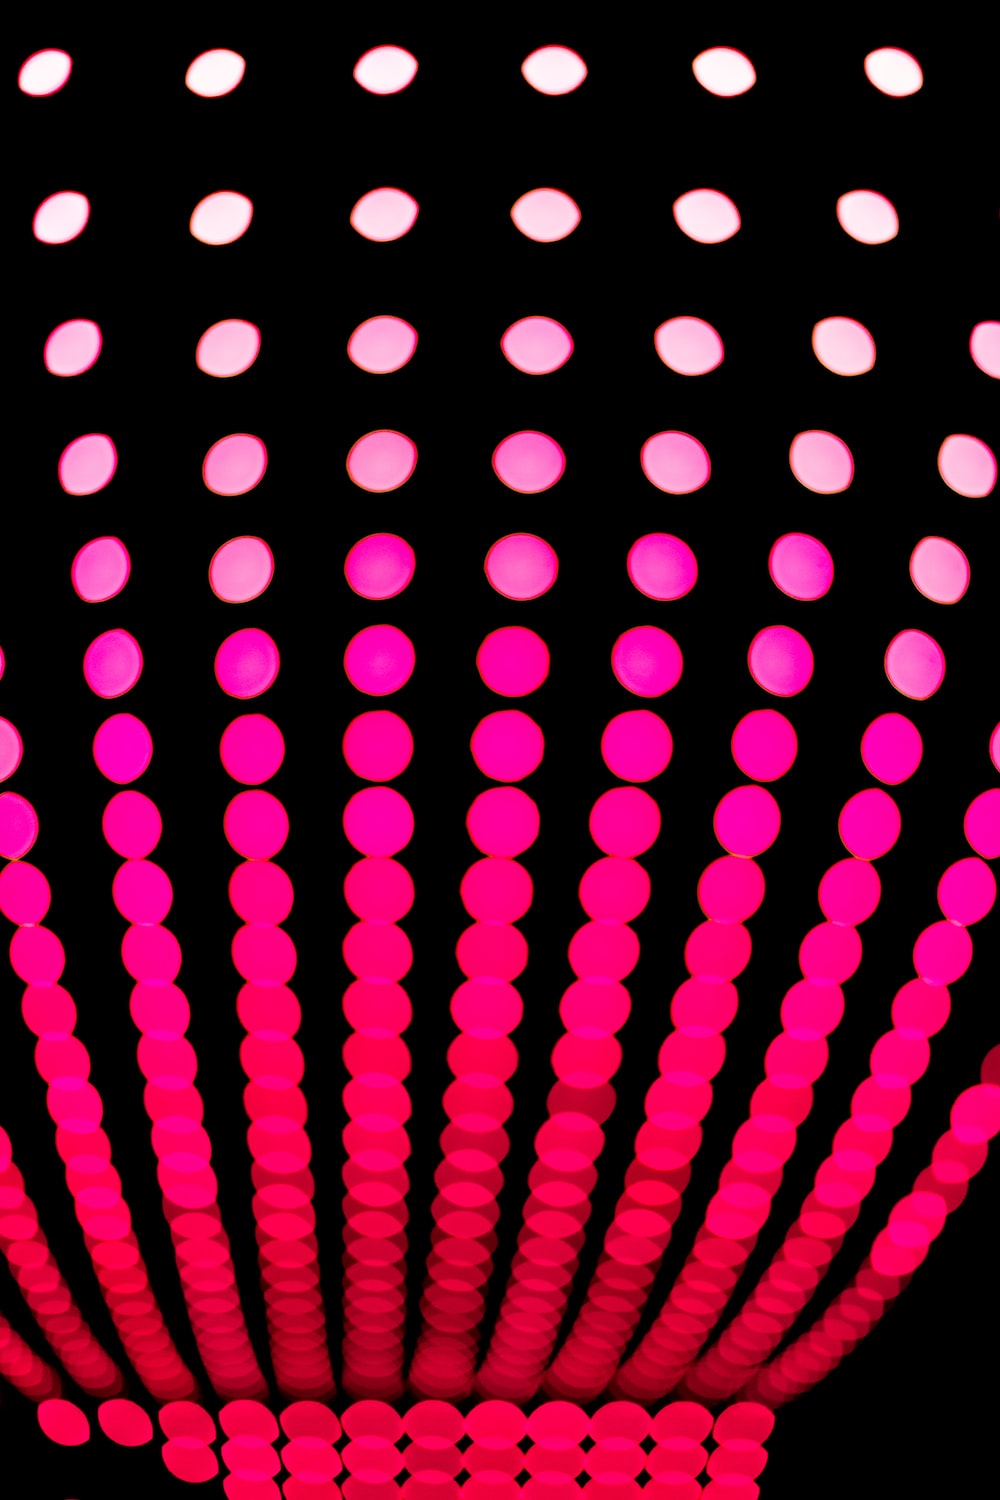 Neon Tech. best free tech, neon, light and wallpaper photo